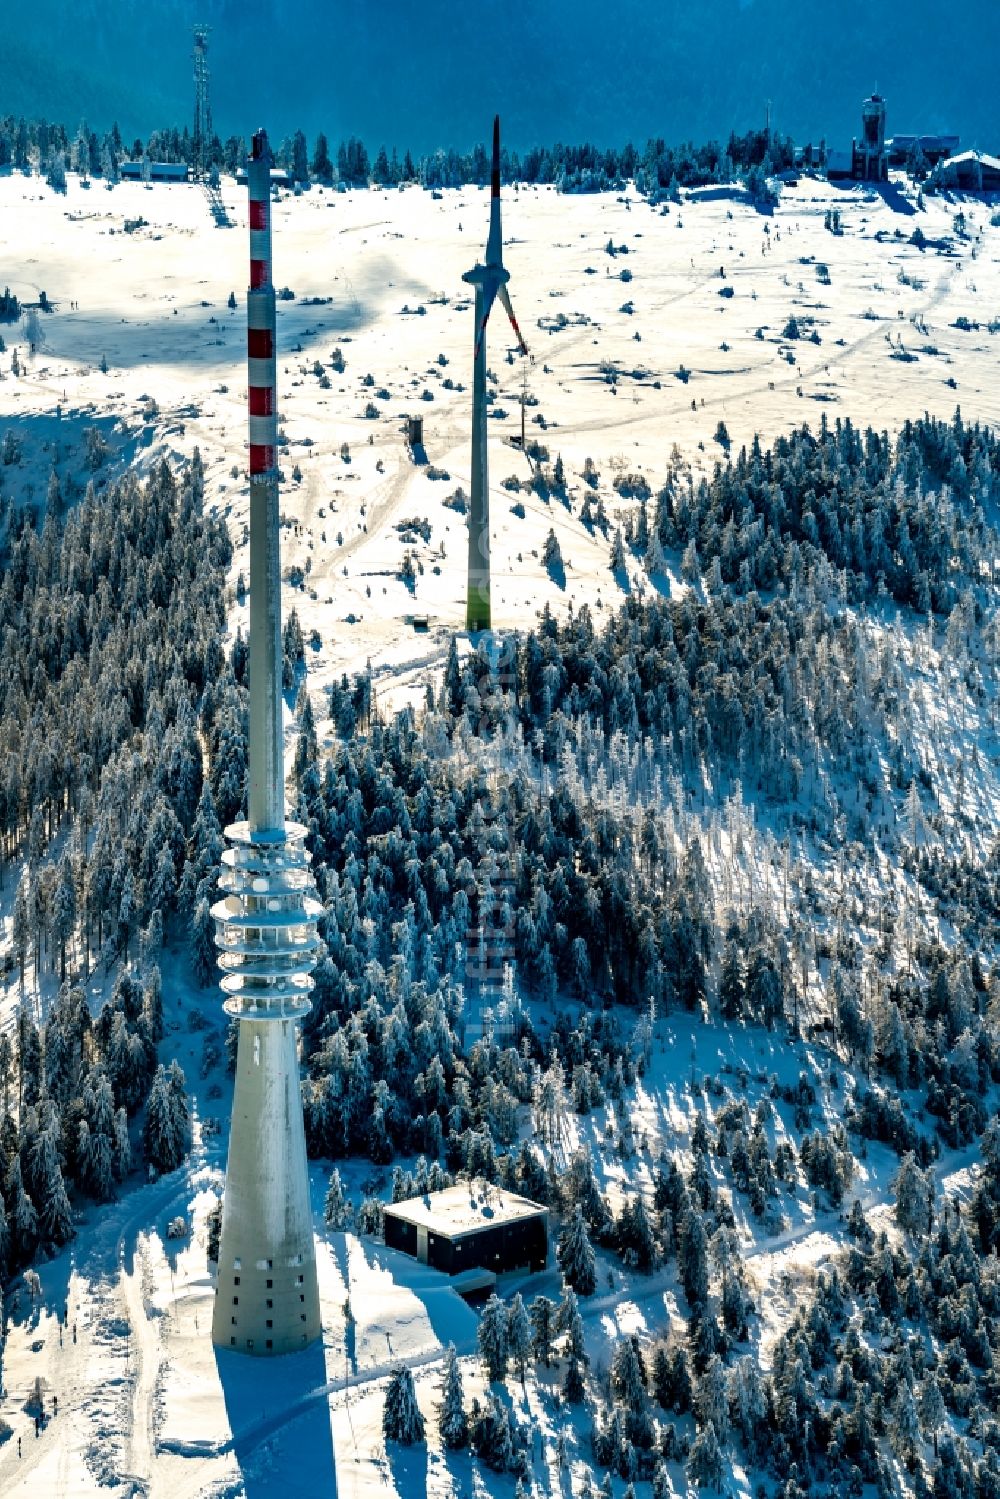 Luftbild Seebach - Winterluftbild Funkturm und Sendeanlage auf der Kuppe des Bergmassives Hornisgrinde im Schwarzwald in Seebach im Bundesland Baden-Württemberg, Deutschland